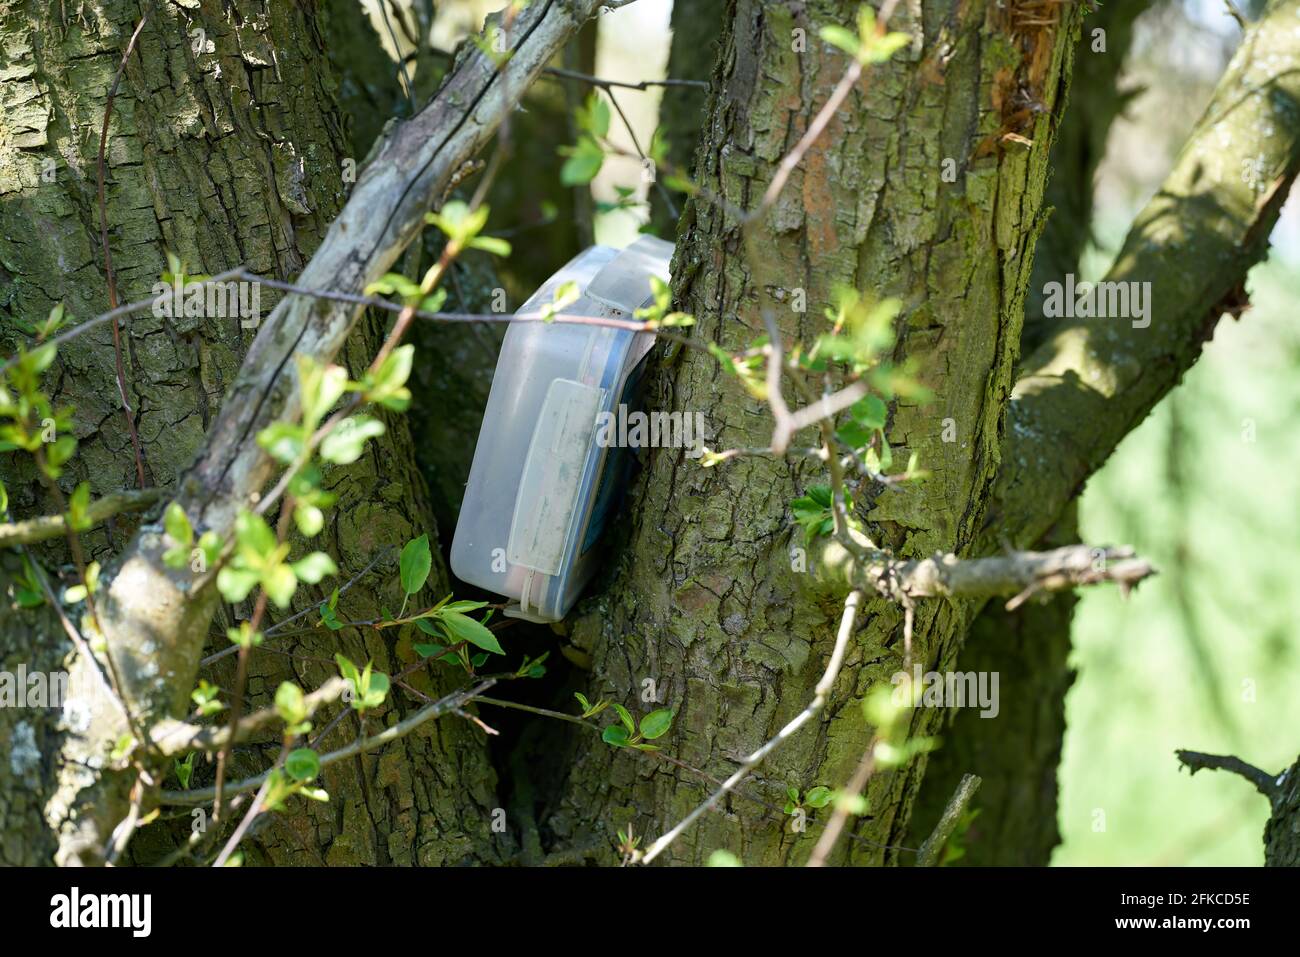 trovato posto nascosto geocaching con una cache in una scatola In un albero nel parco di Herrenkrugpark vicino a Magdeburg in Germania Foto Stock